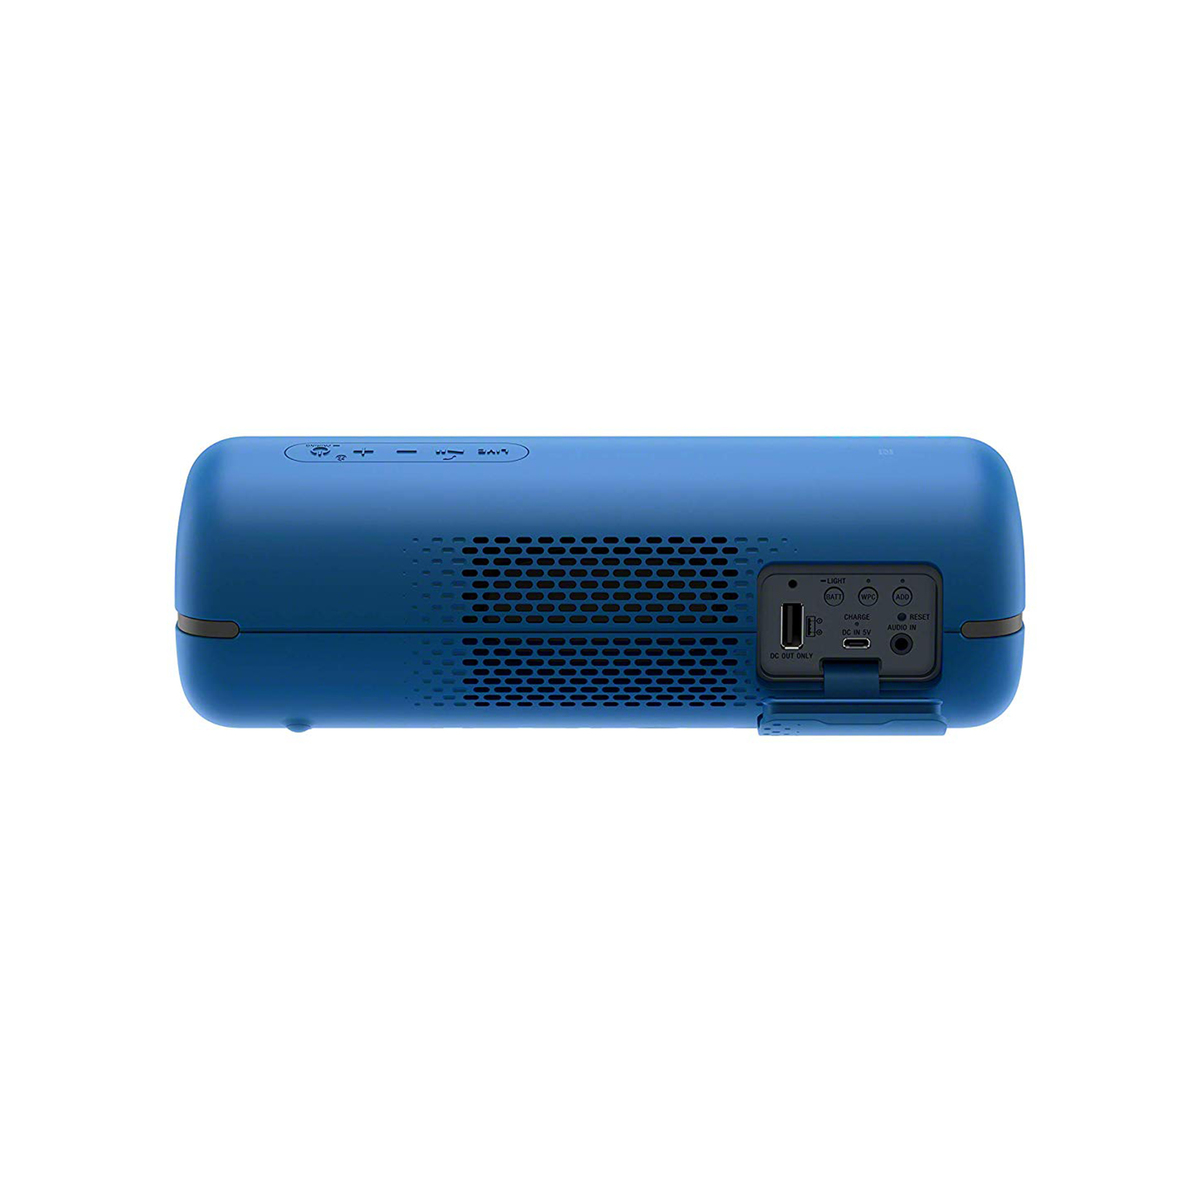 Sony Wireless Bluetooth Speaker SRS-XB32 Blue